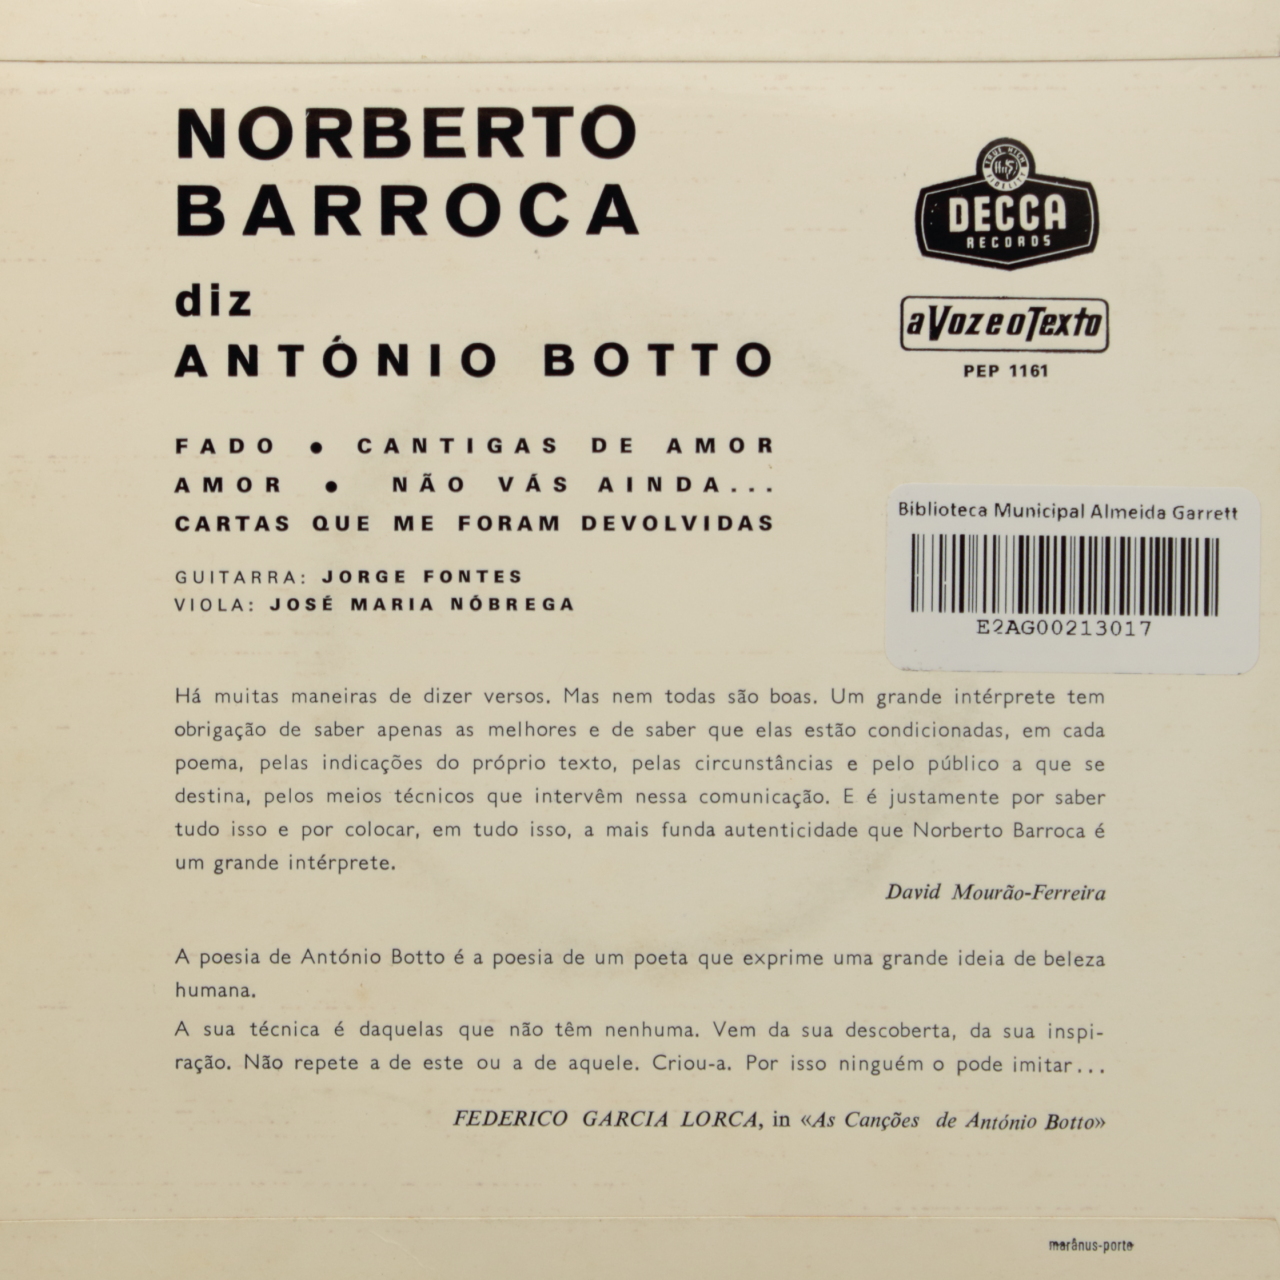 Norberto Barroca diz António Botto